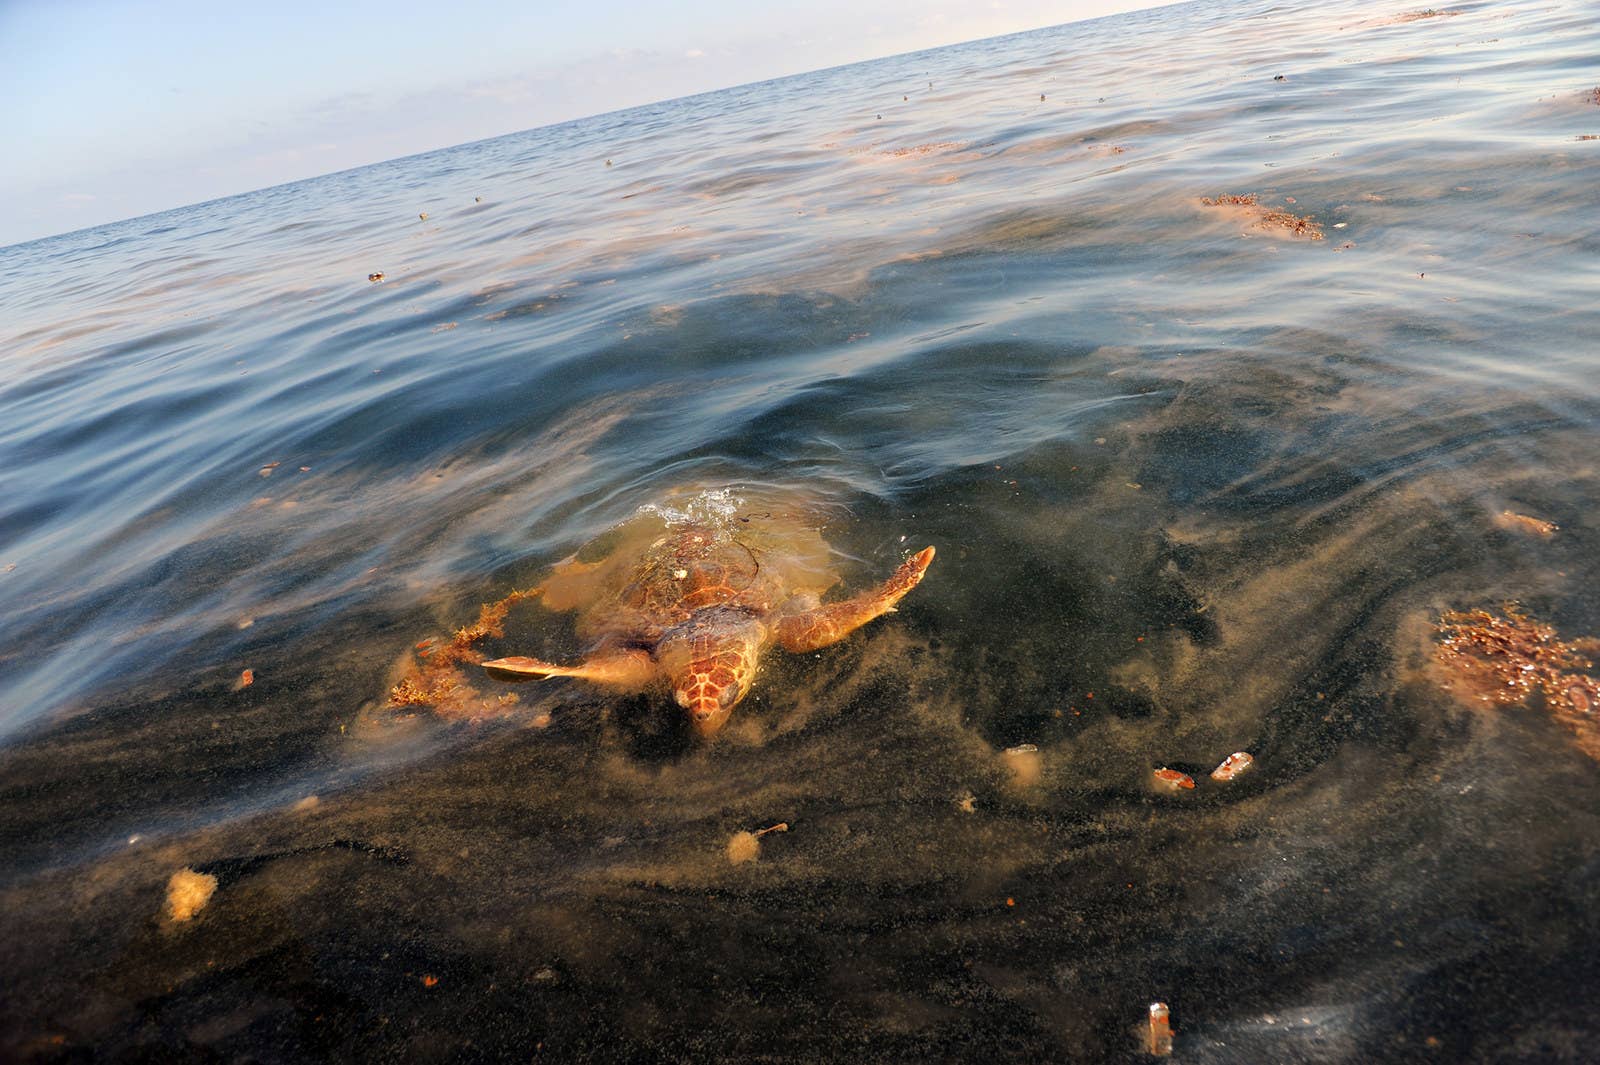 メキシコ湾原油流出事故で汚染されたカツオノエボシを食べるため、海面に浮かんだウミガメ。(2010年5月5日)